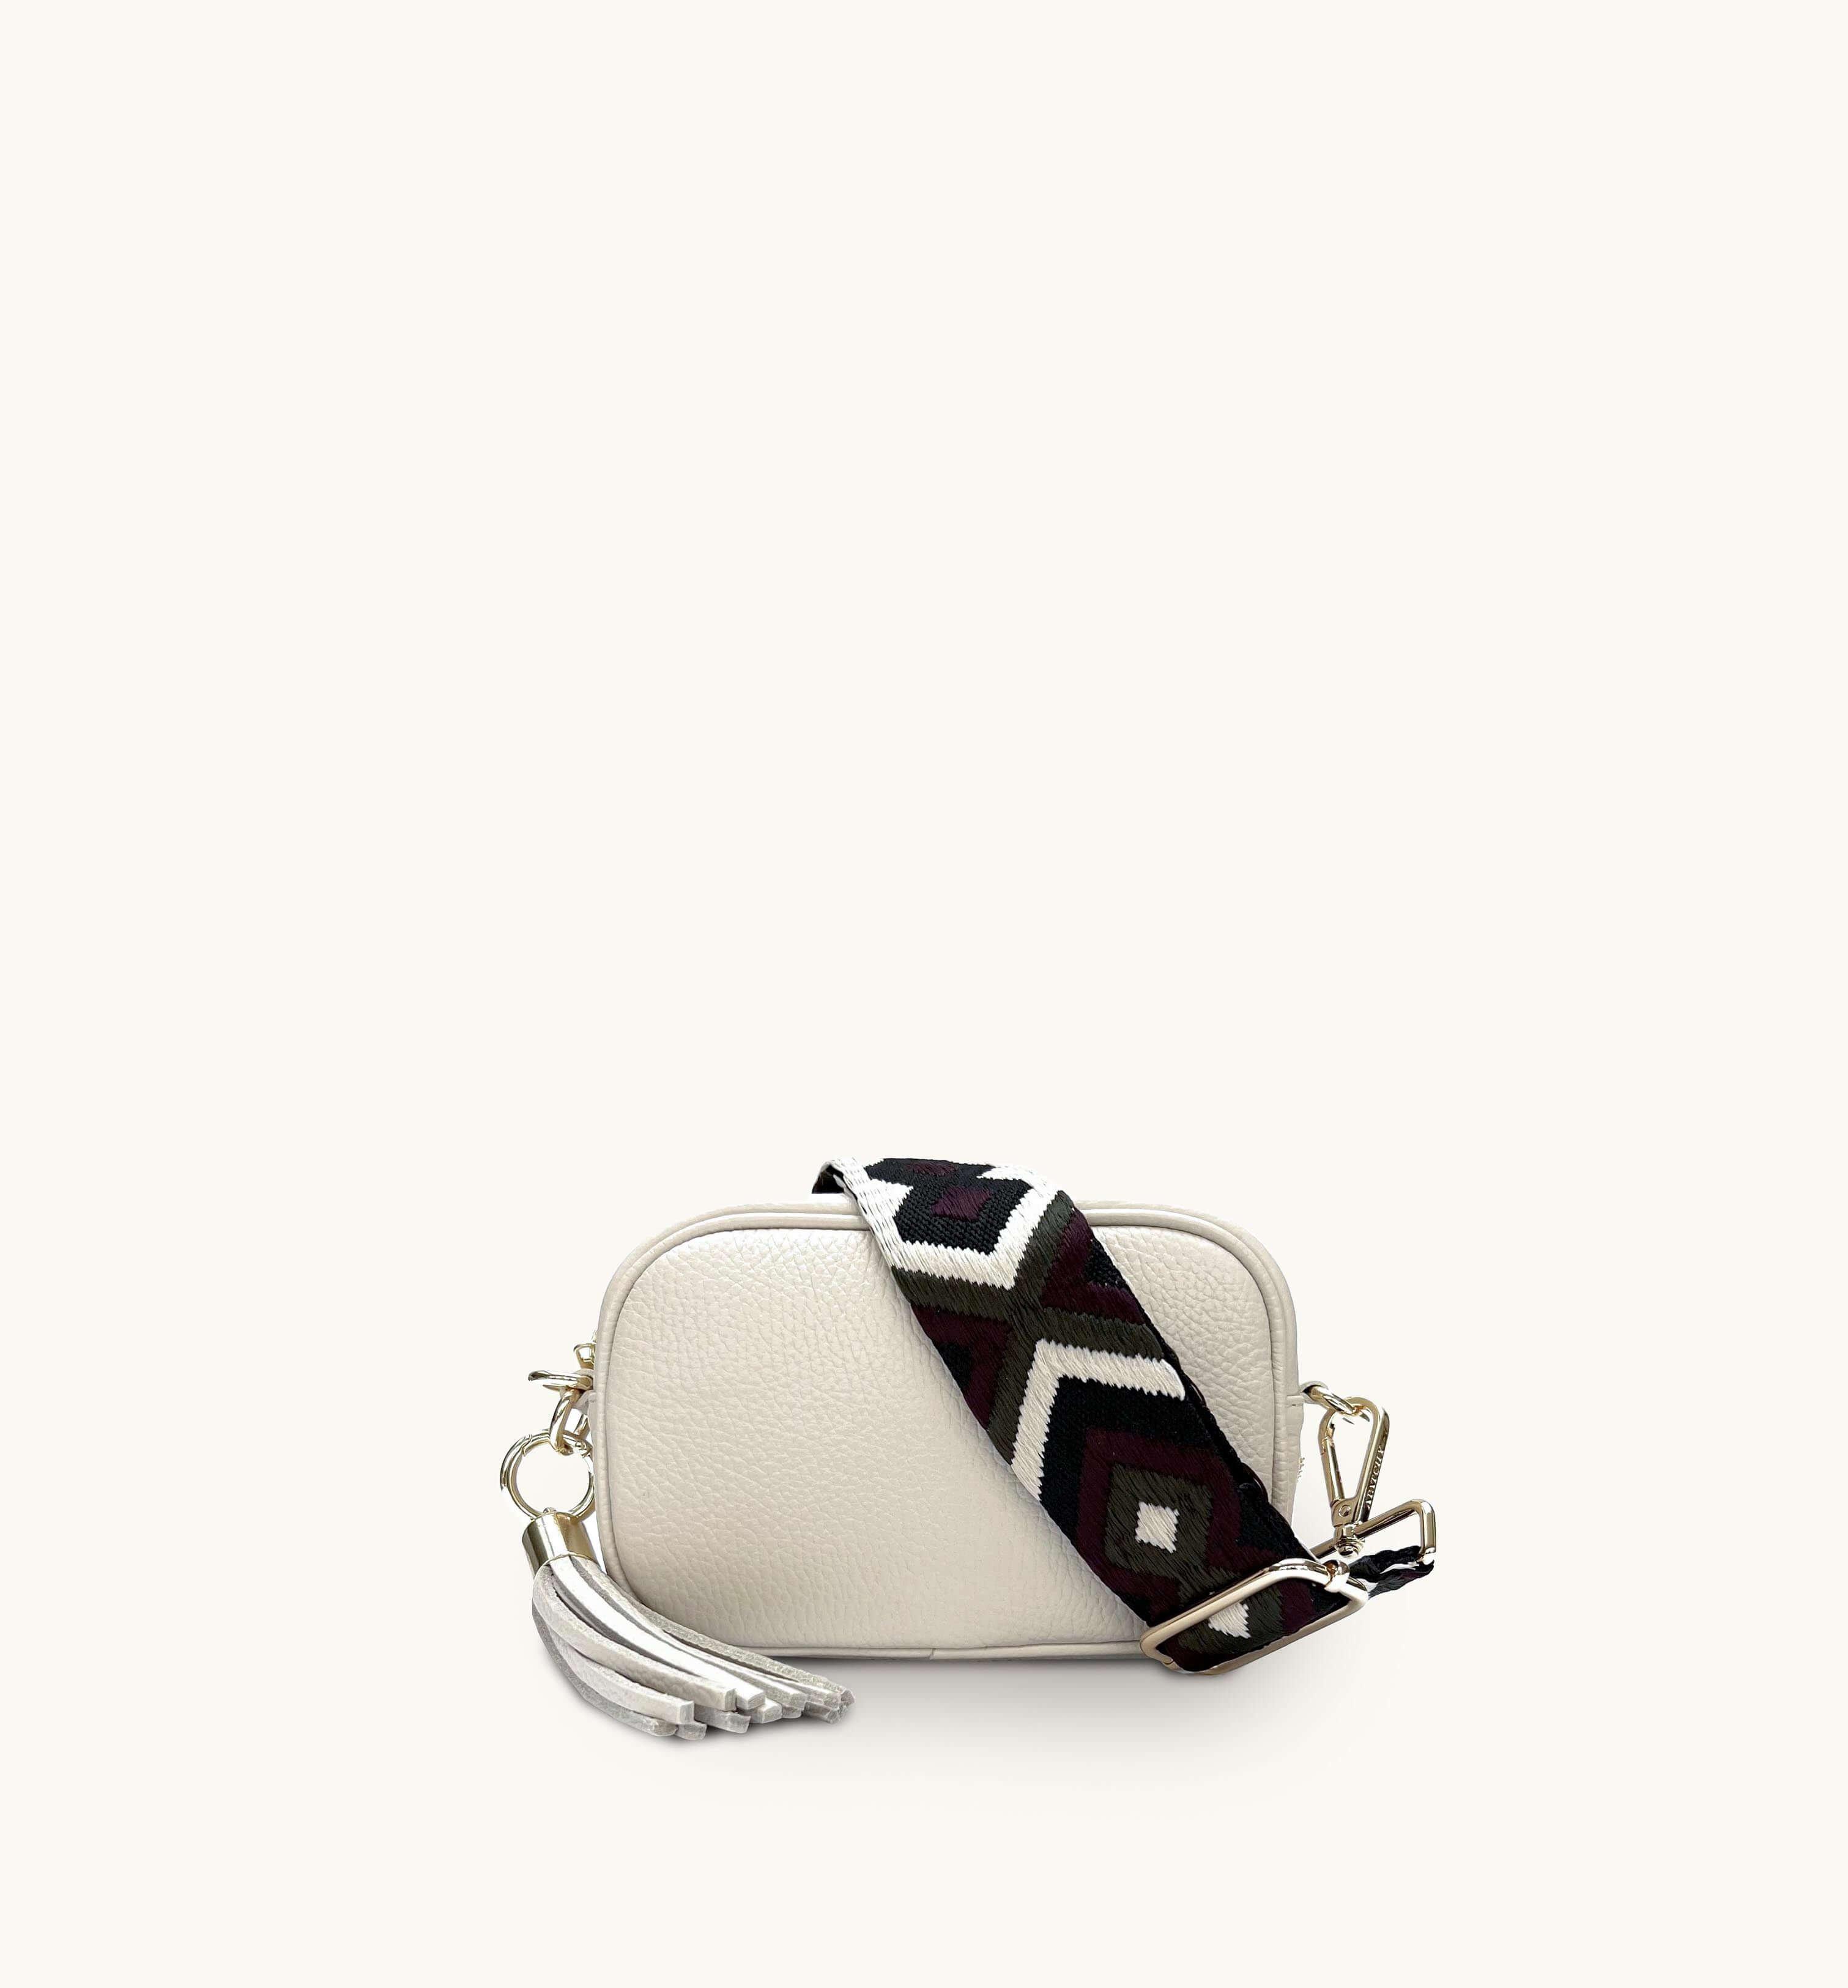 Кожаная сумка для телефона Mini с кисточками и оливковым ремешком с бриллиантами Apatchy London, бежевый